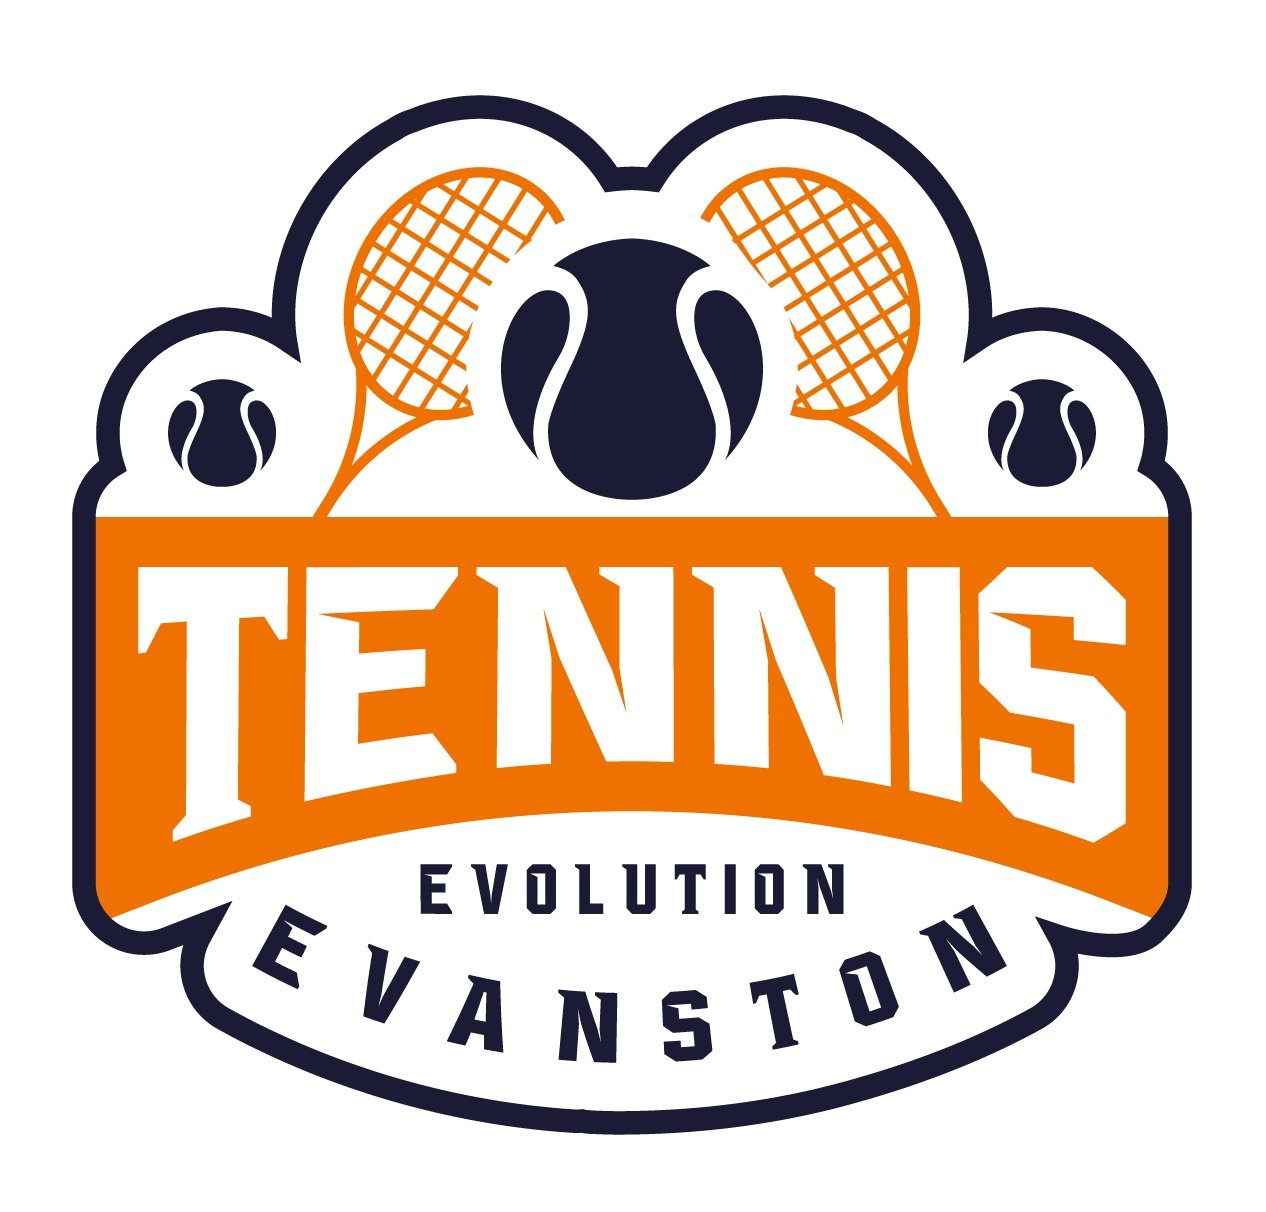 Tennis Evolution Evanston